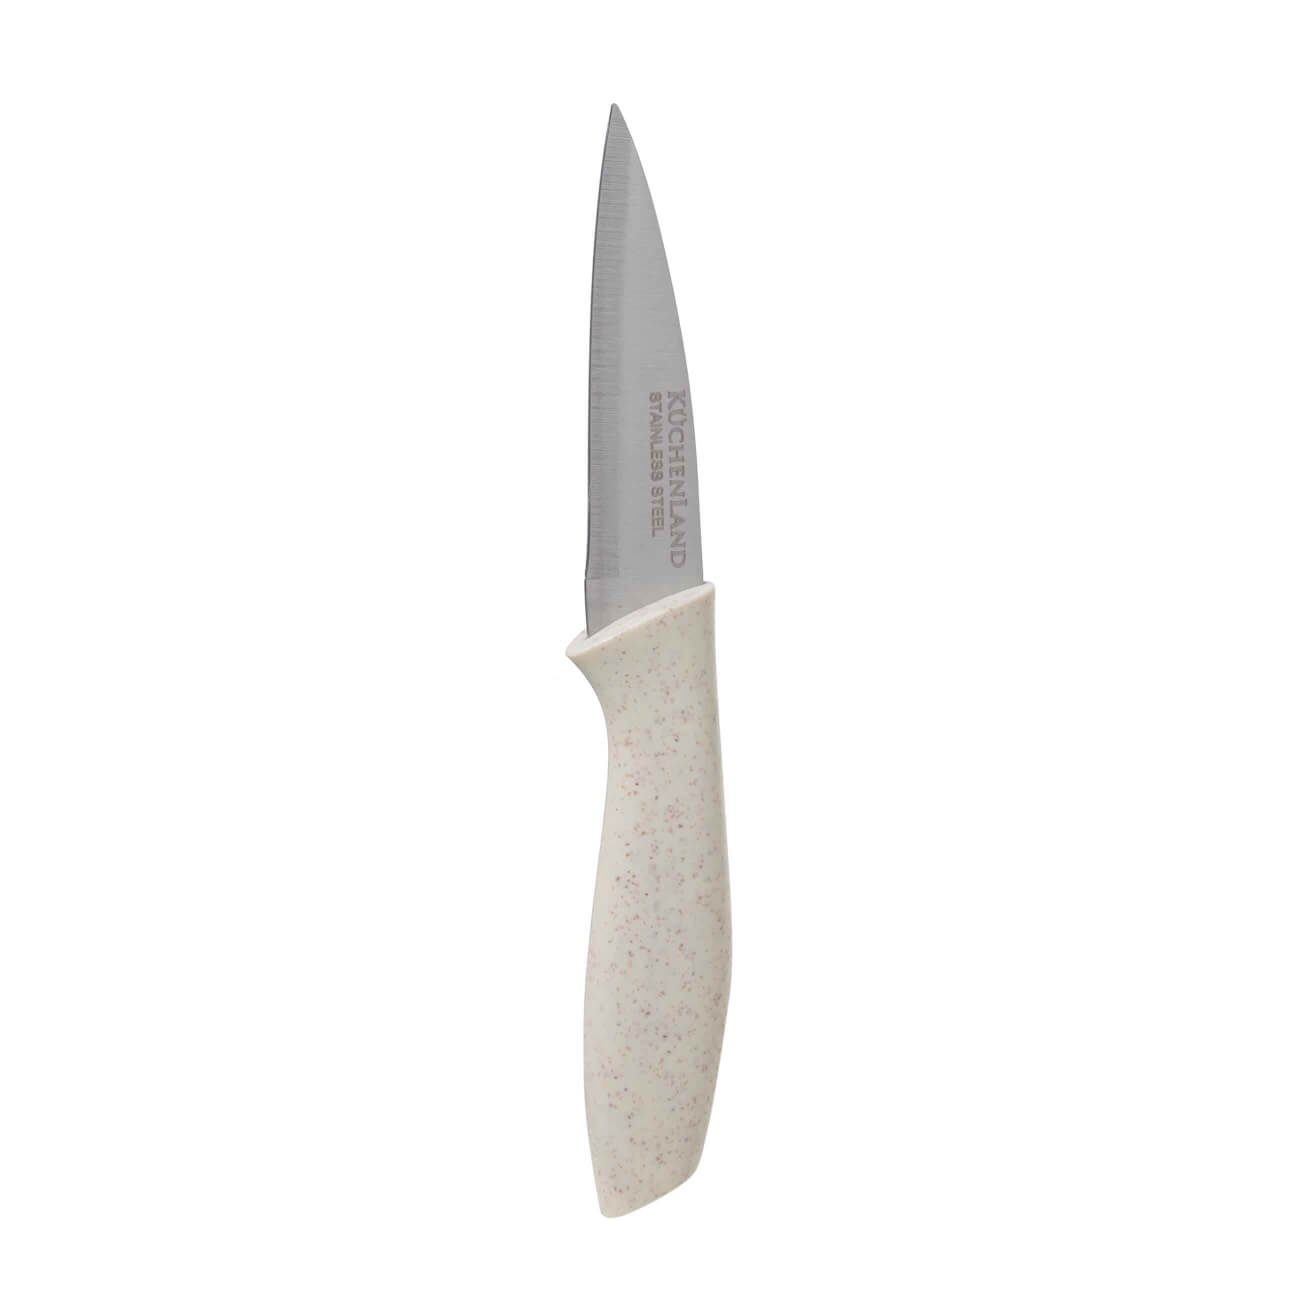 Нож для чистки овощей, 9 см, сталь/пластик, молочный, Speck-light kuchenland нож для чистки овощей 10 см сталь пластик select